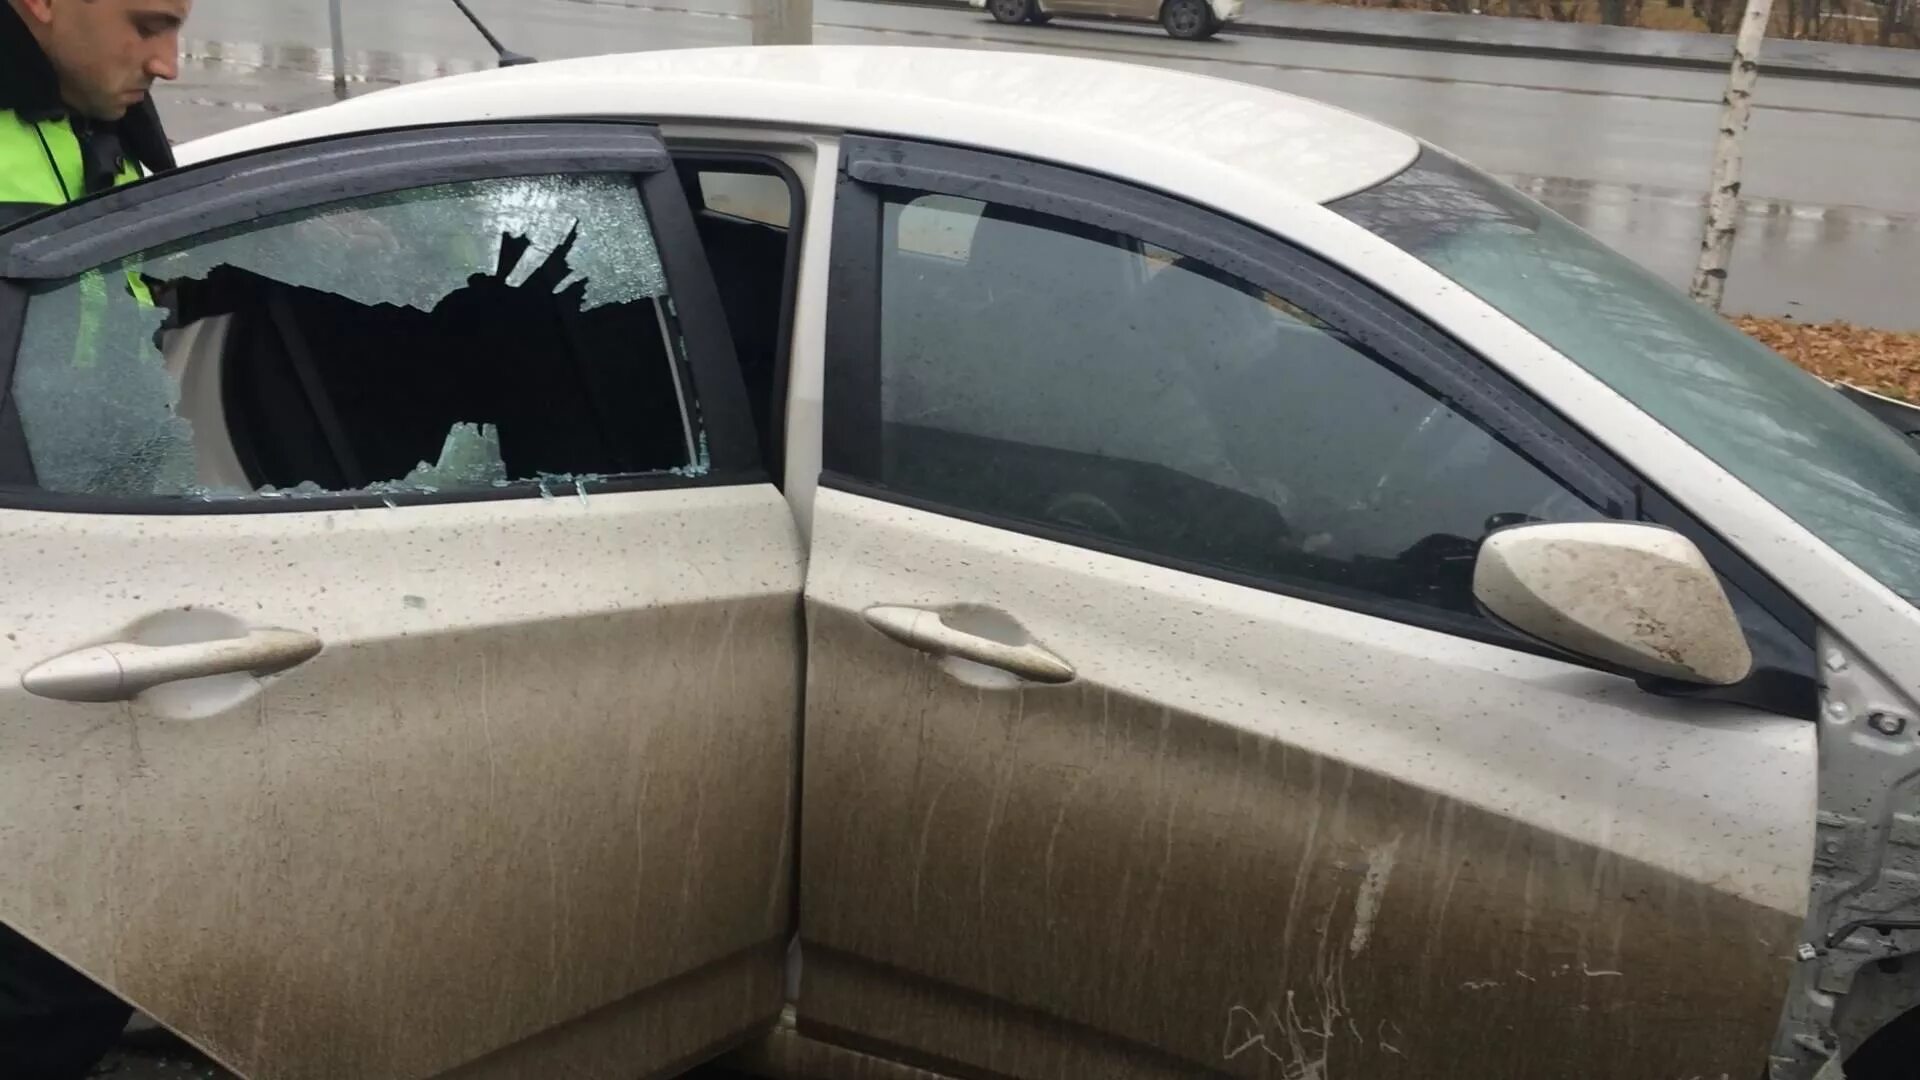 Разбили окно машины. Разбитое стекло автомобиля. Разбивает стекло авто. Разбили стекло в машине. Машина с разбитым стеклом.